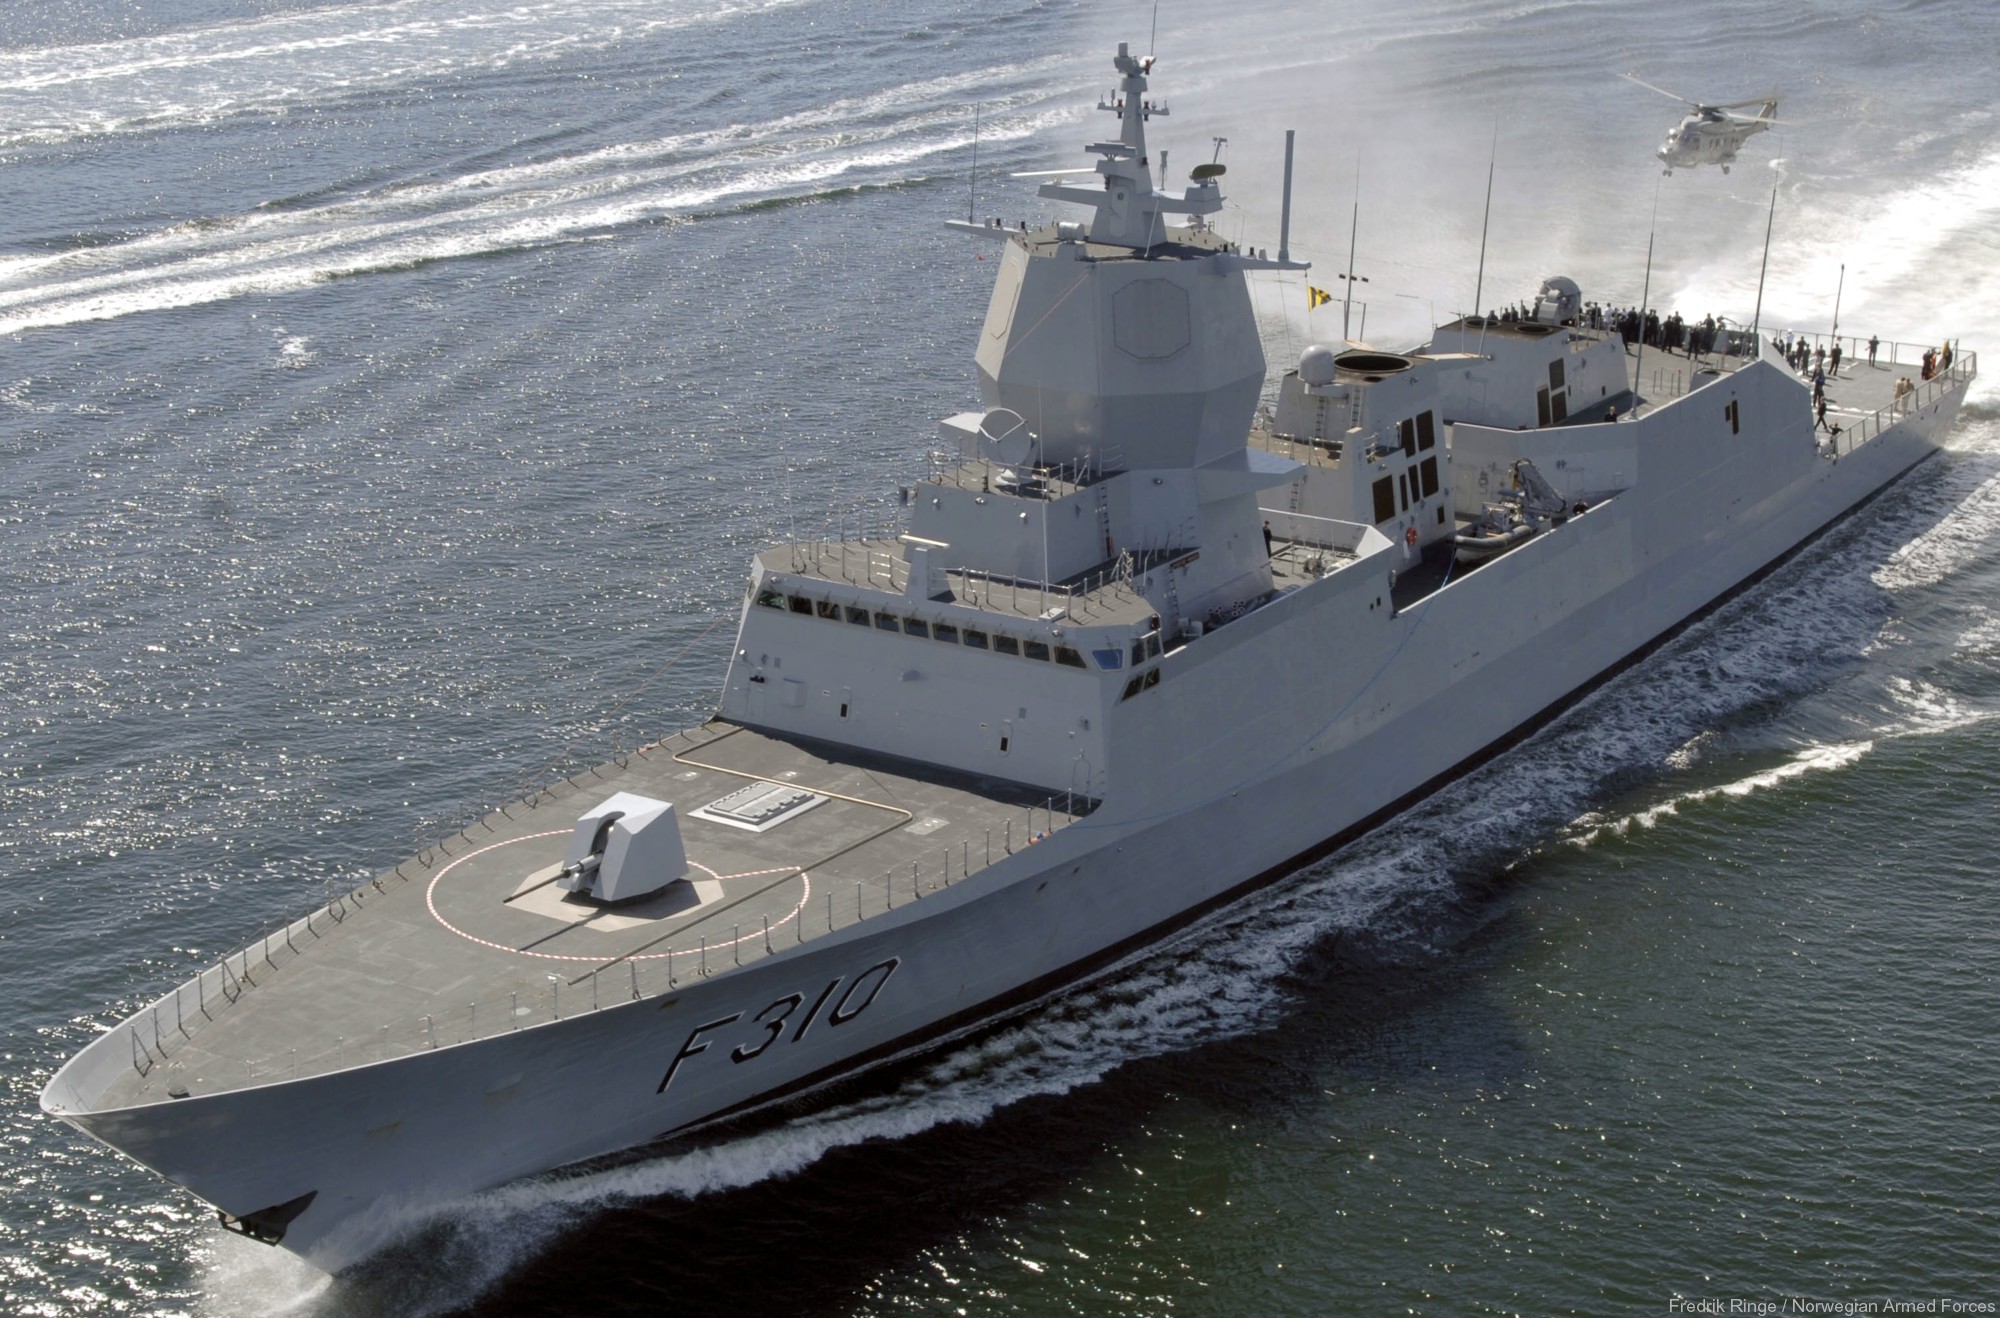 f-310 fridtjof nansen hnoms knm frigate royal norwegian navy sjoforsvaret 65